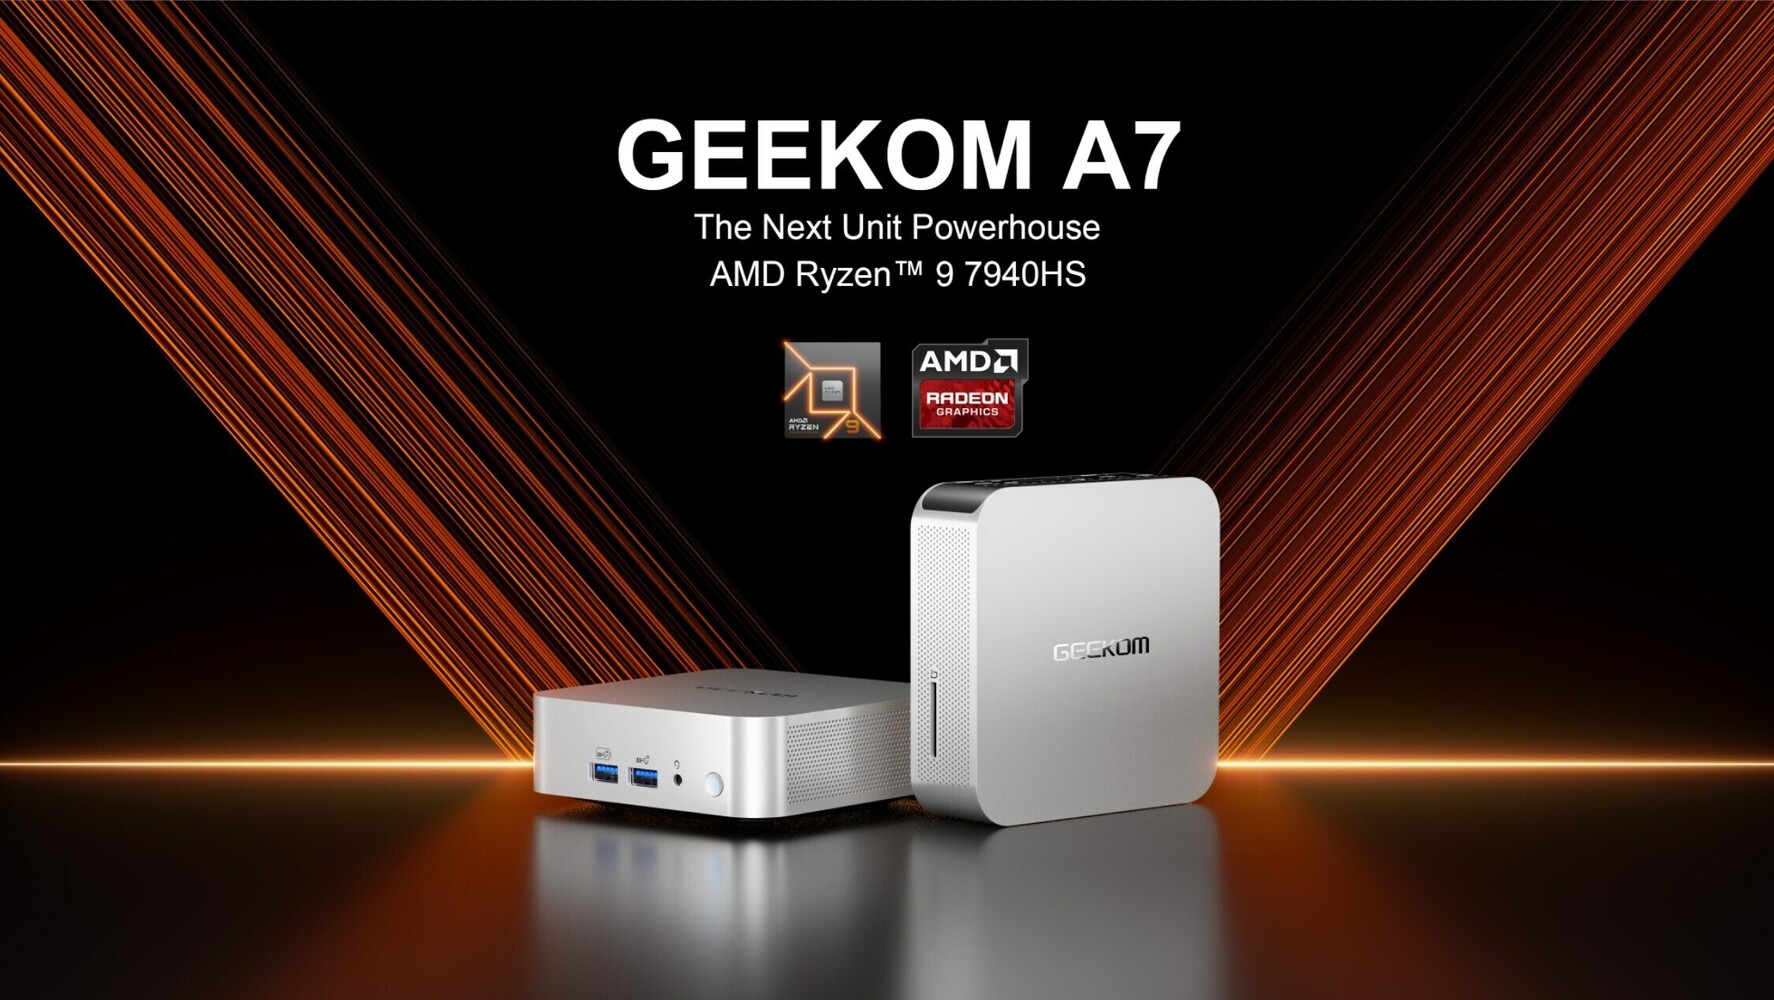 GEEKOM A7 Mini PC Powered by AMD Ryzen 9 Phoenix Open to Pre-orders